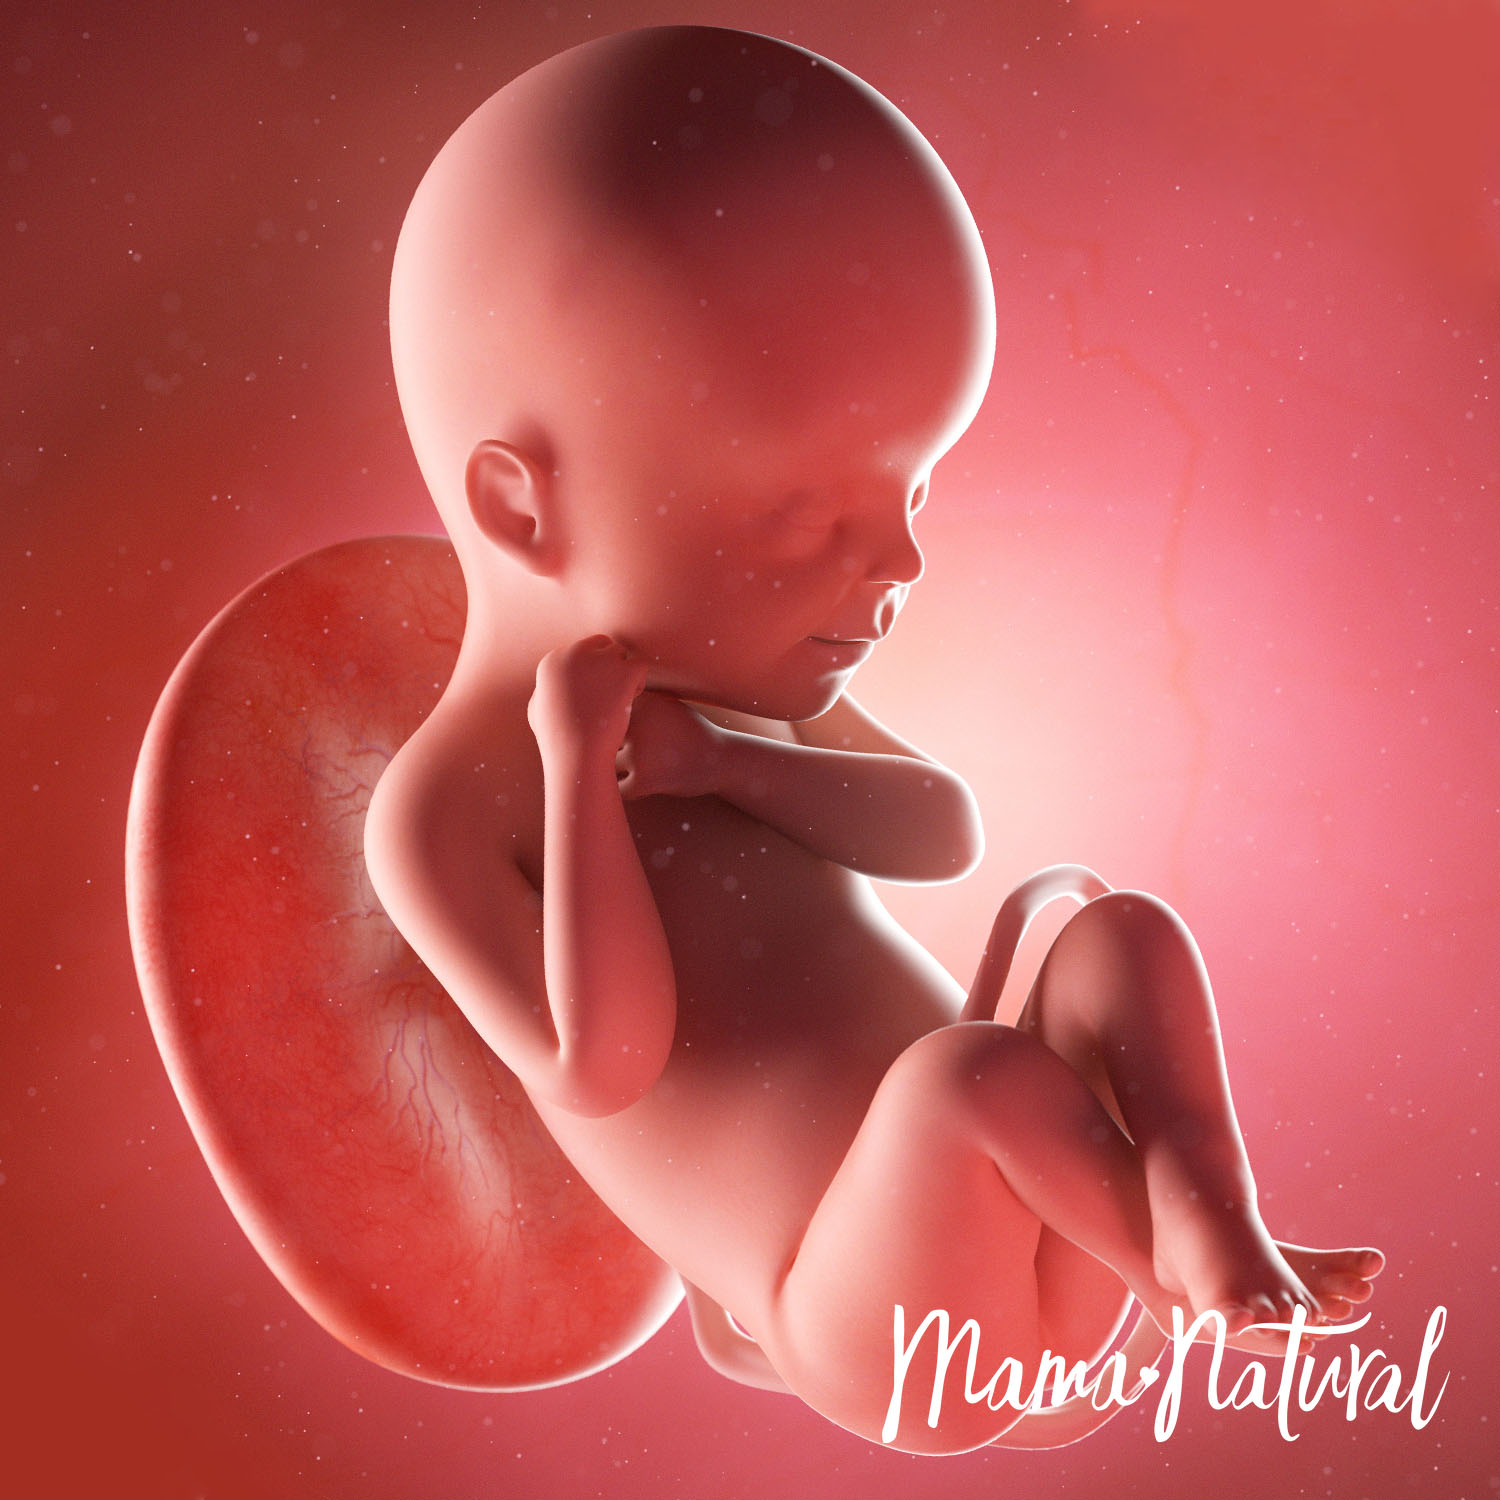 Baby at 24 Weeks Pregnant - Pregnancy Week By Week by Mama Natural